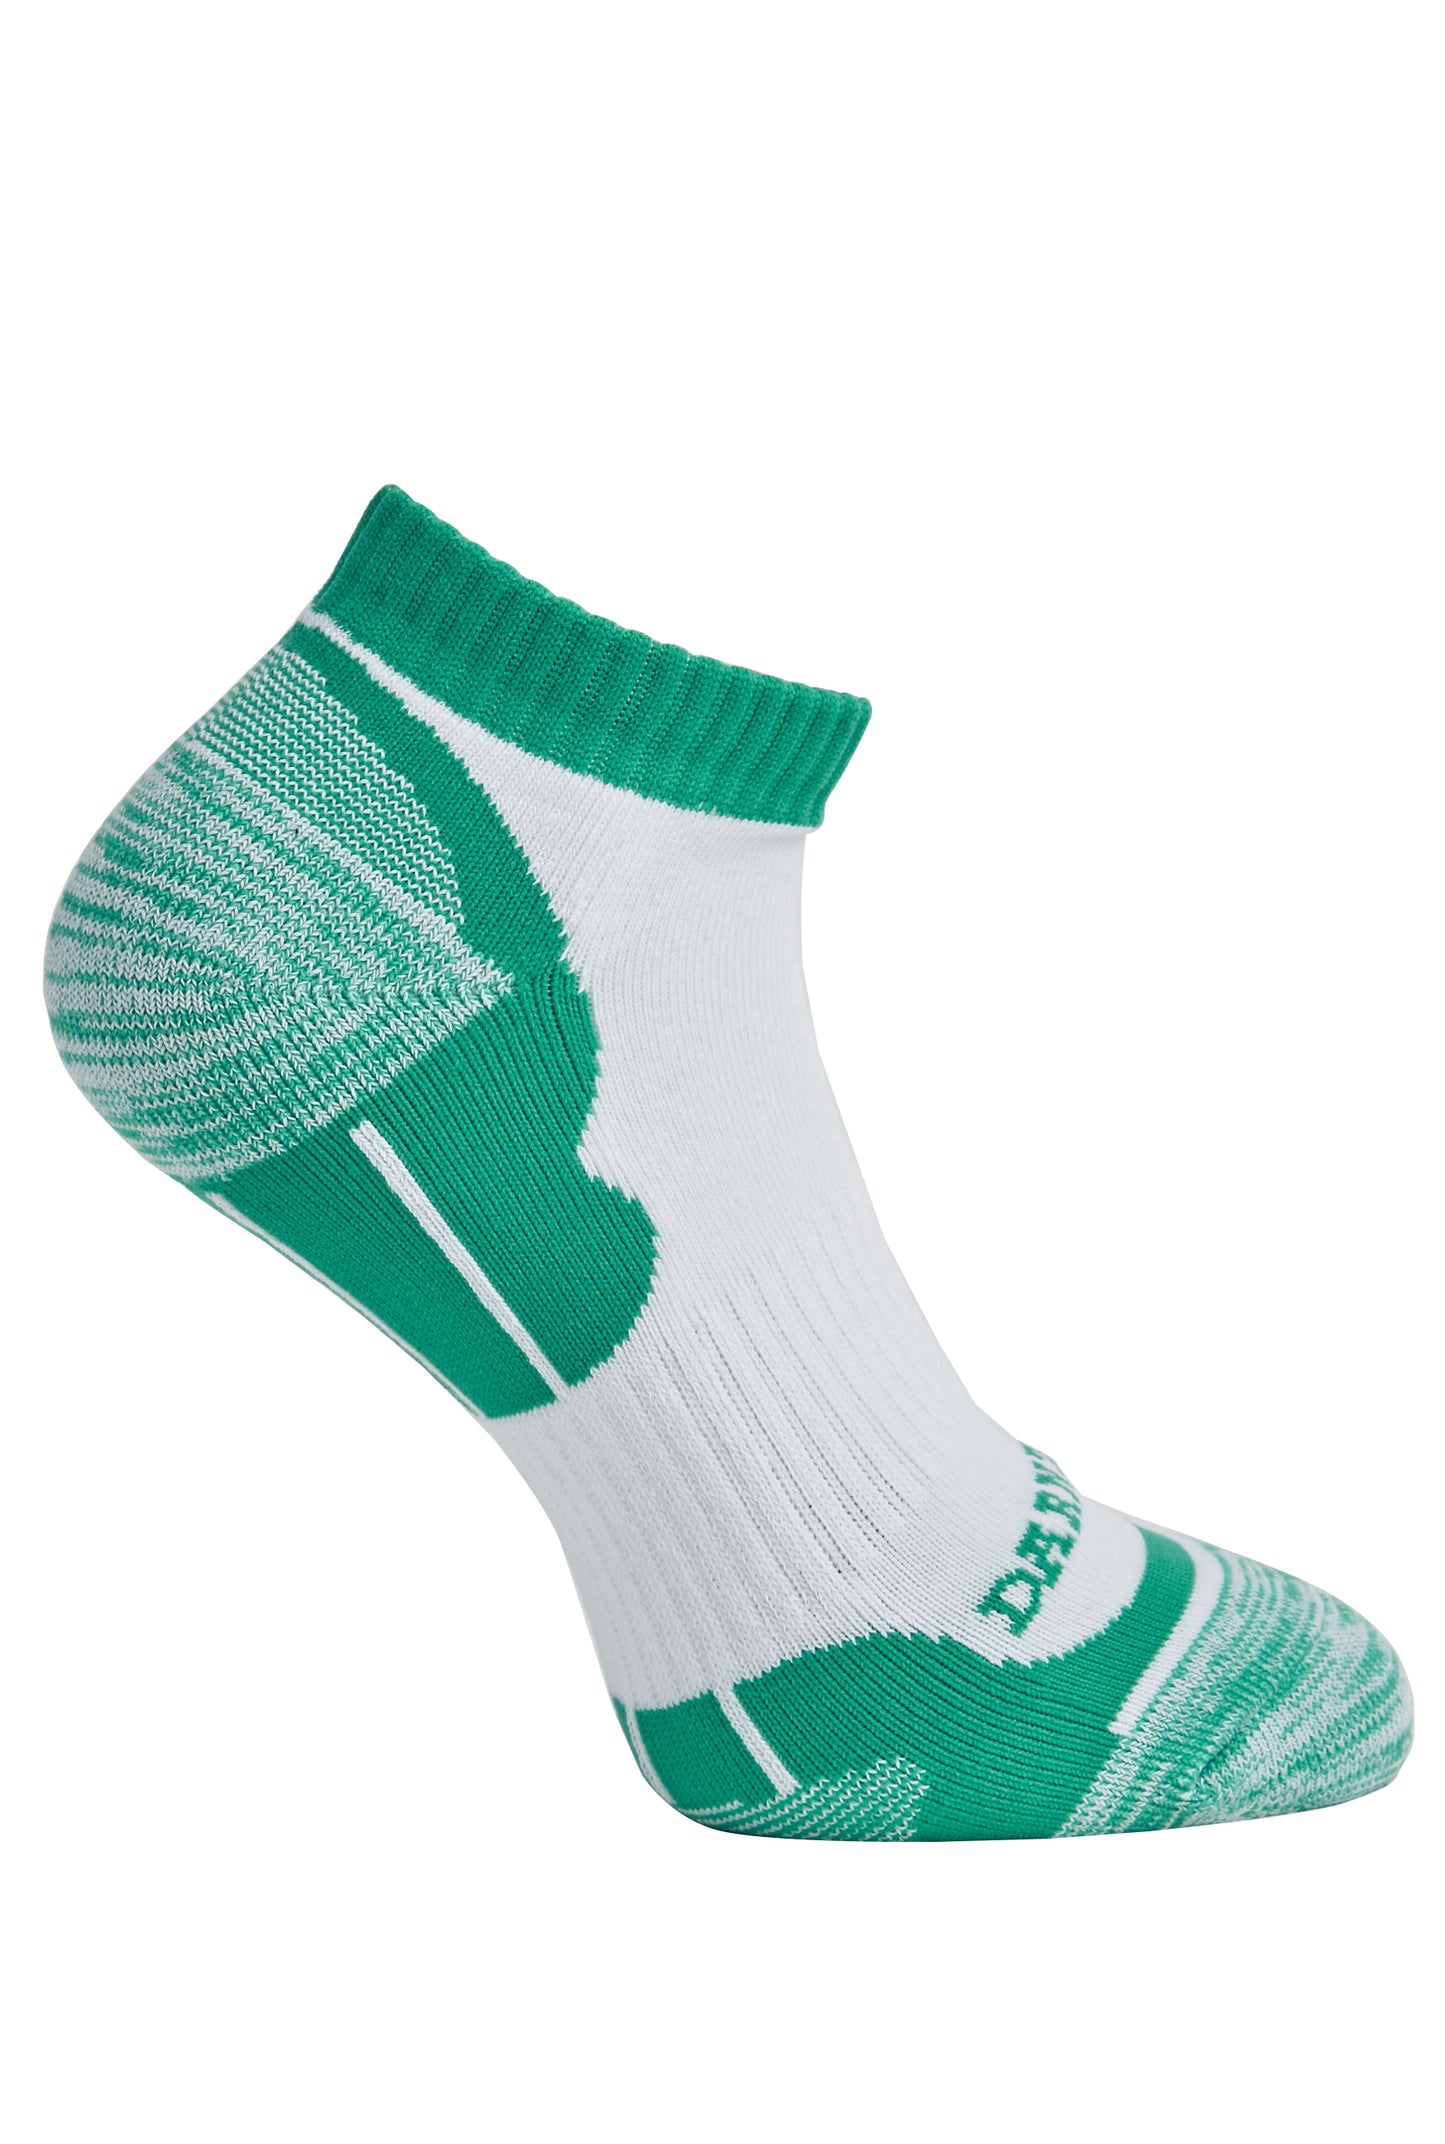 Side of Darn Tough Men's Sports Ankle Socks in Green